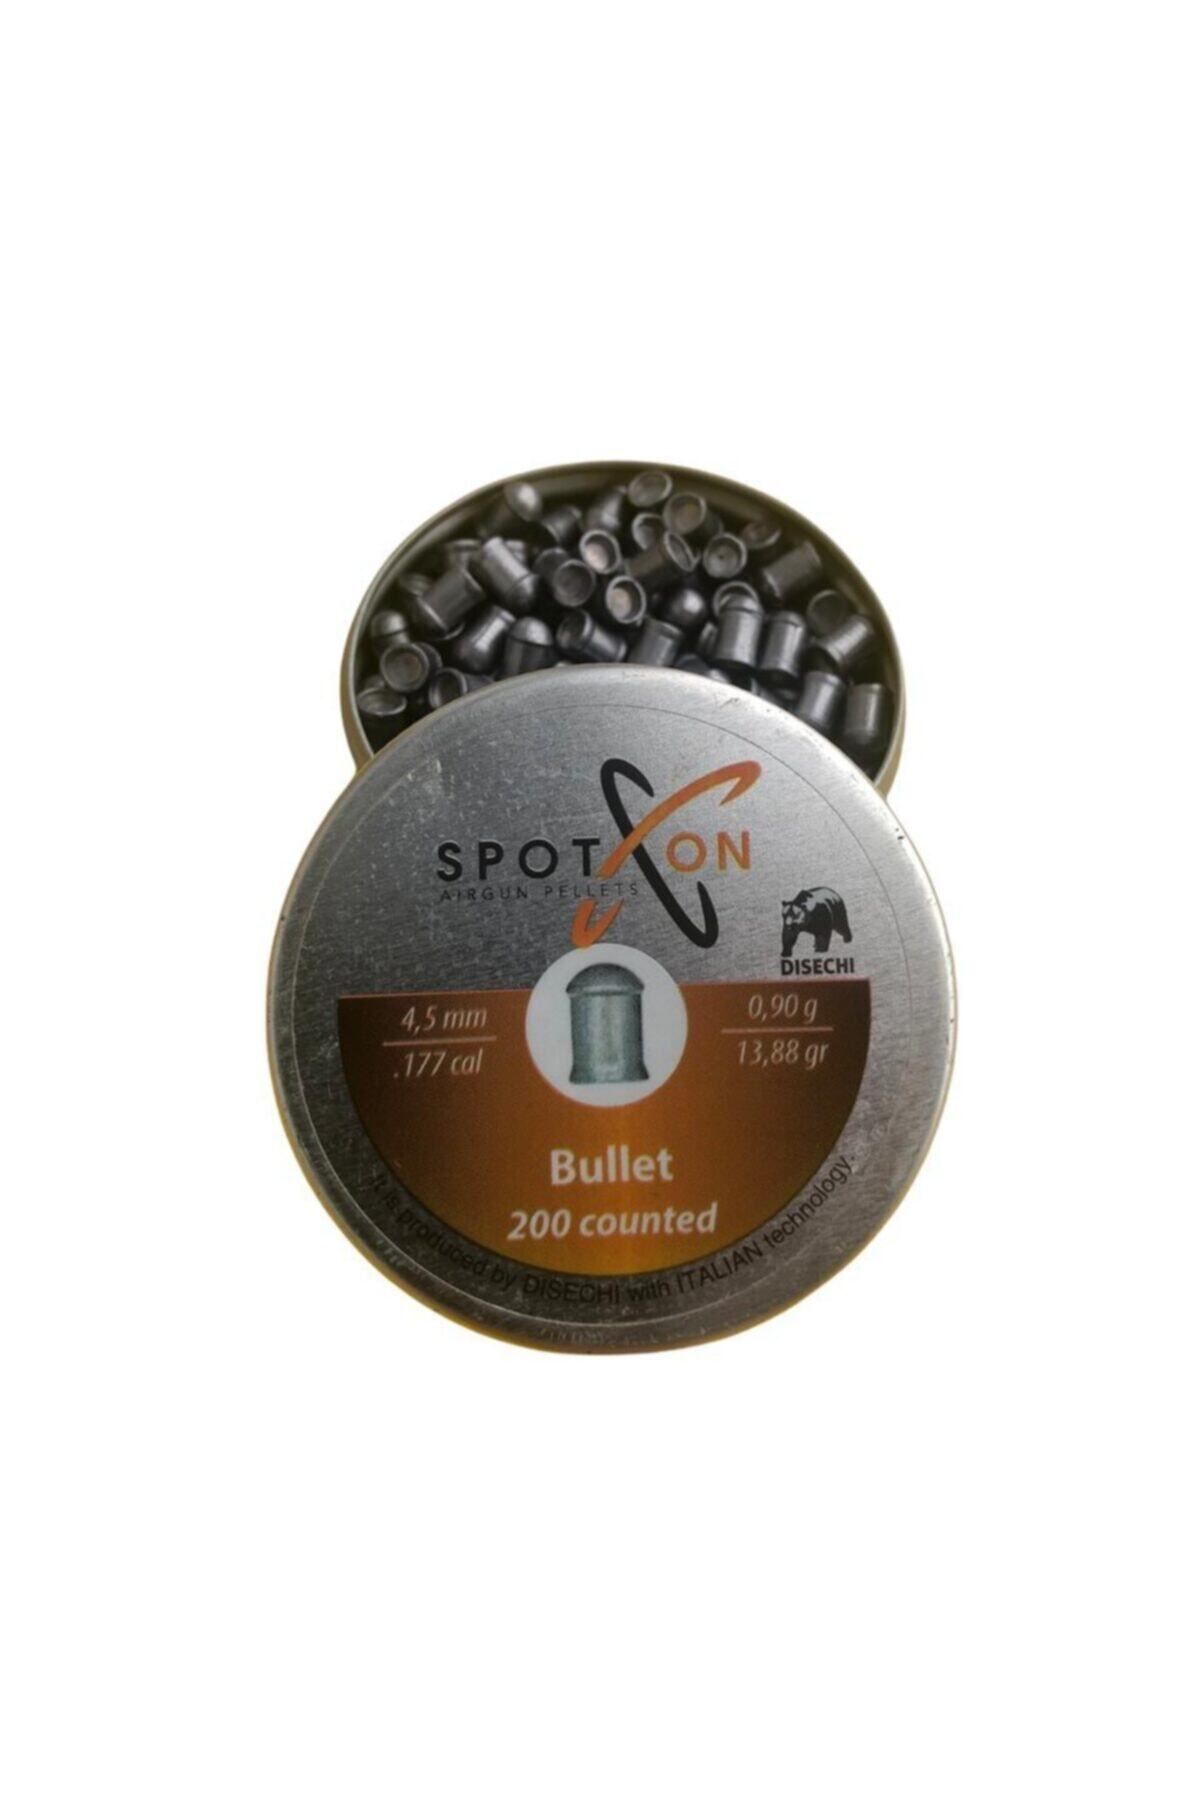 Spoton Bullet 4,5mm. 13,88gr Pellet (KOCA AV PAZARI)